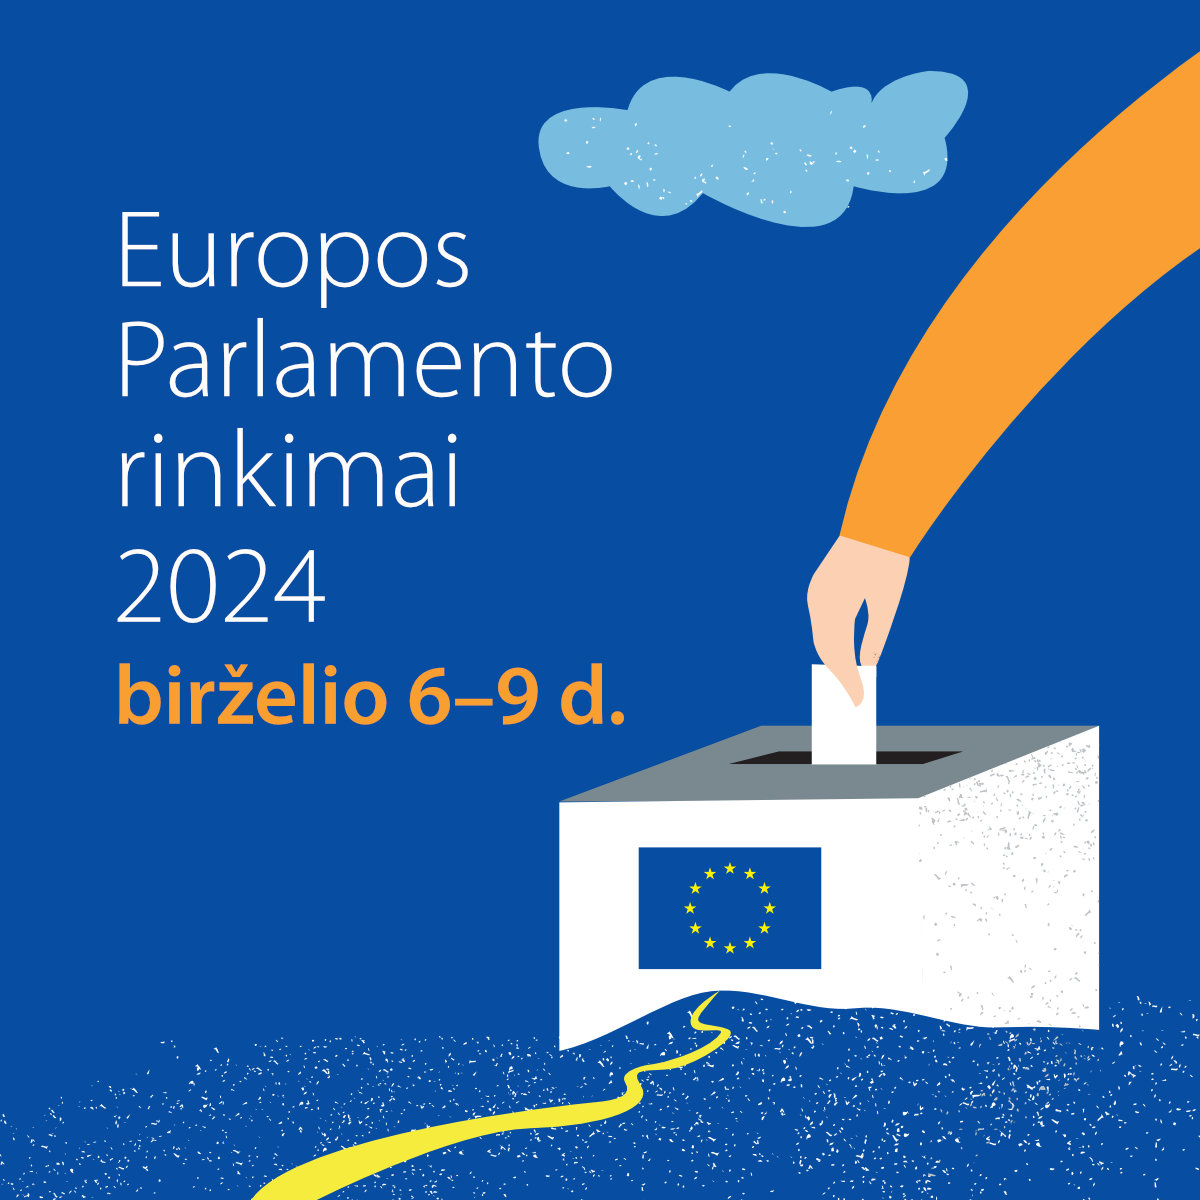 Europos Parlamento rinkimai 2024 - Square.jpg